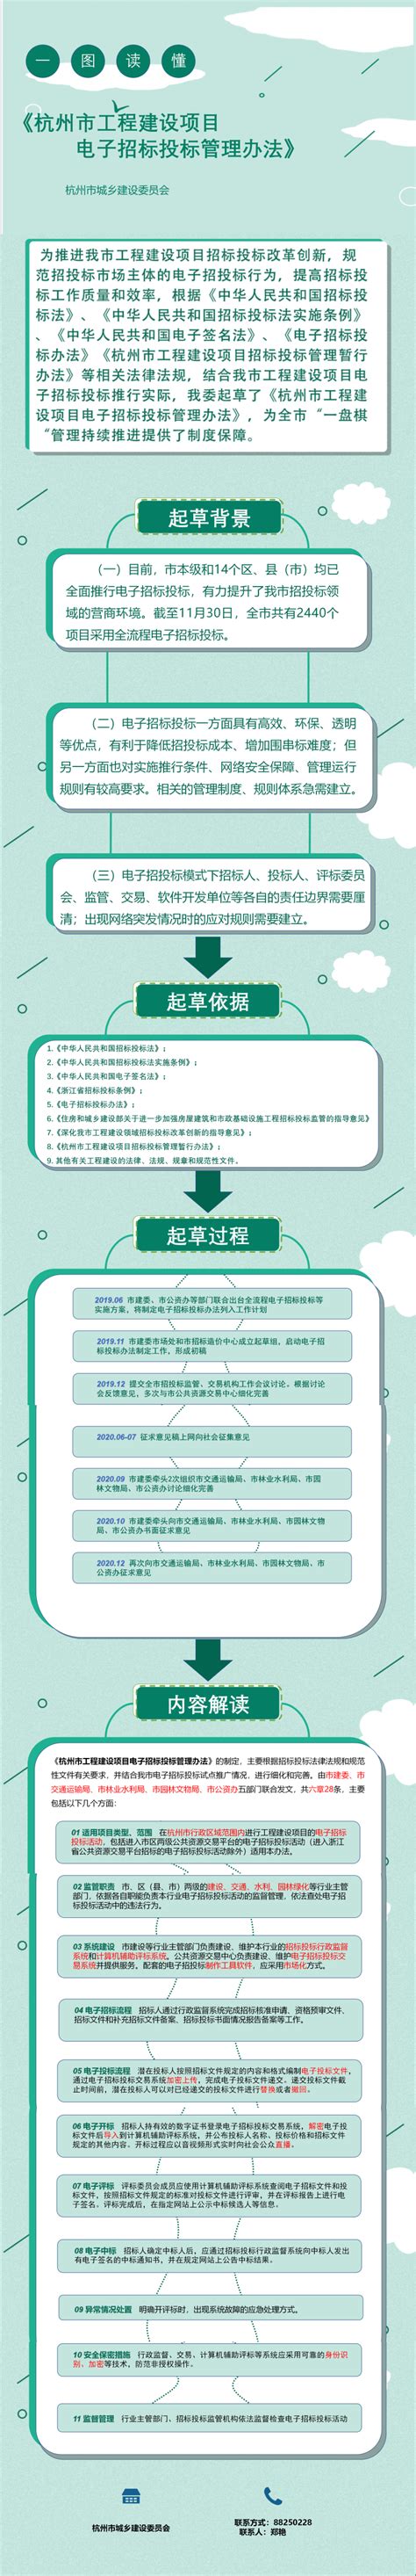 《杭州市工程建设项目电子招标投标管理办法》图片解读